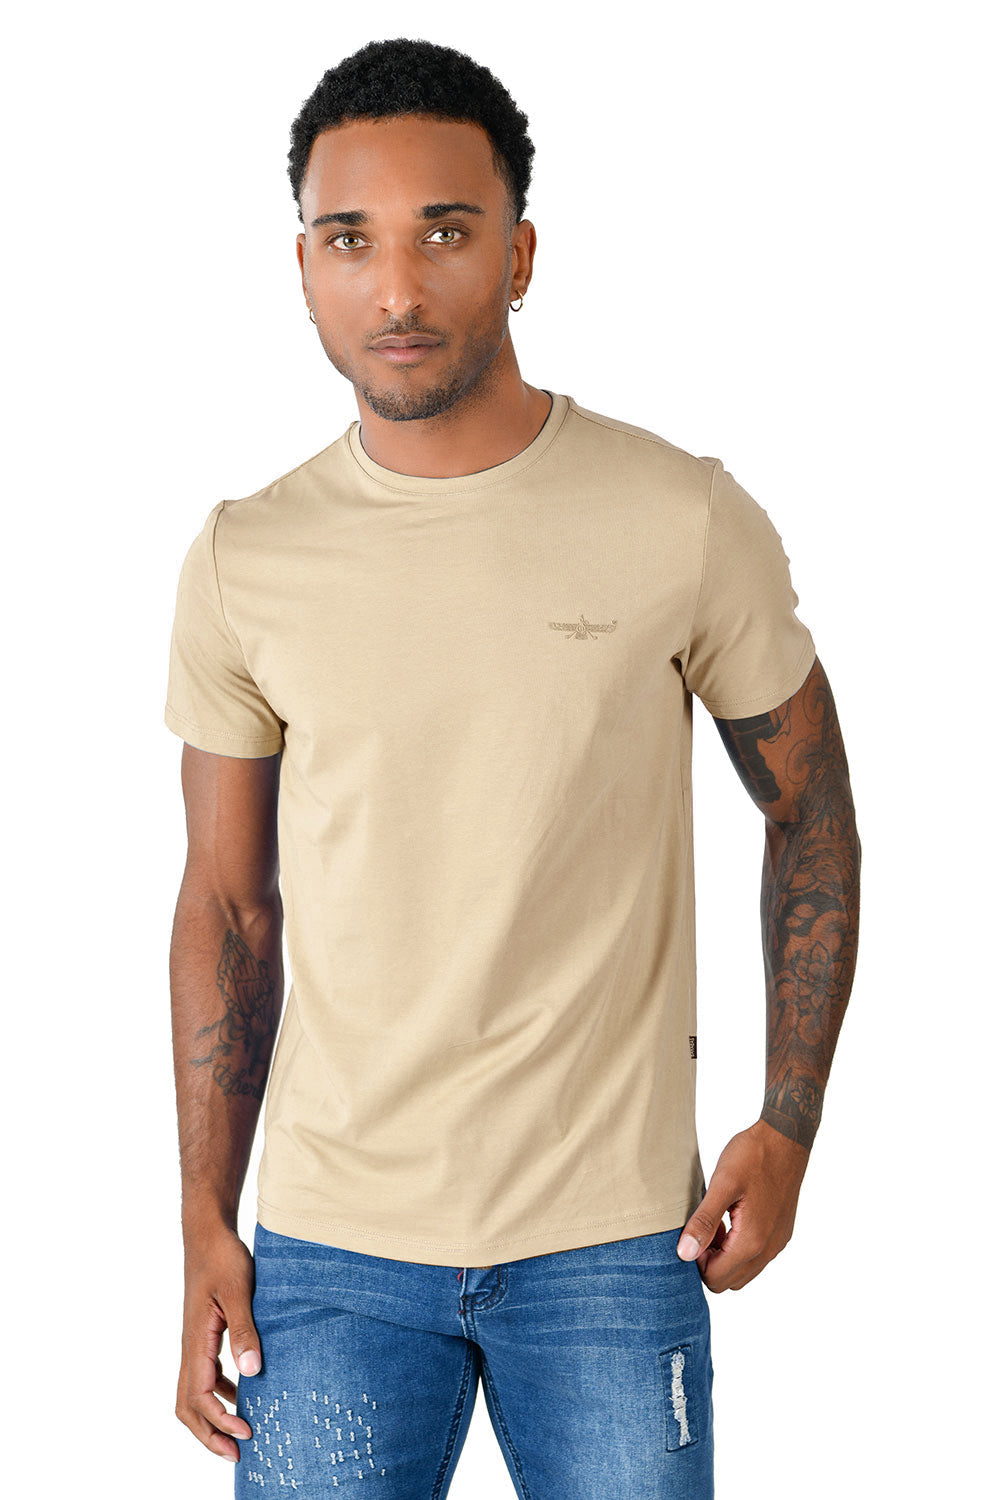 BARABAS Men's Basic Solid Color Crew-neck T-shirts ST933 Natural